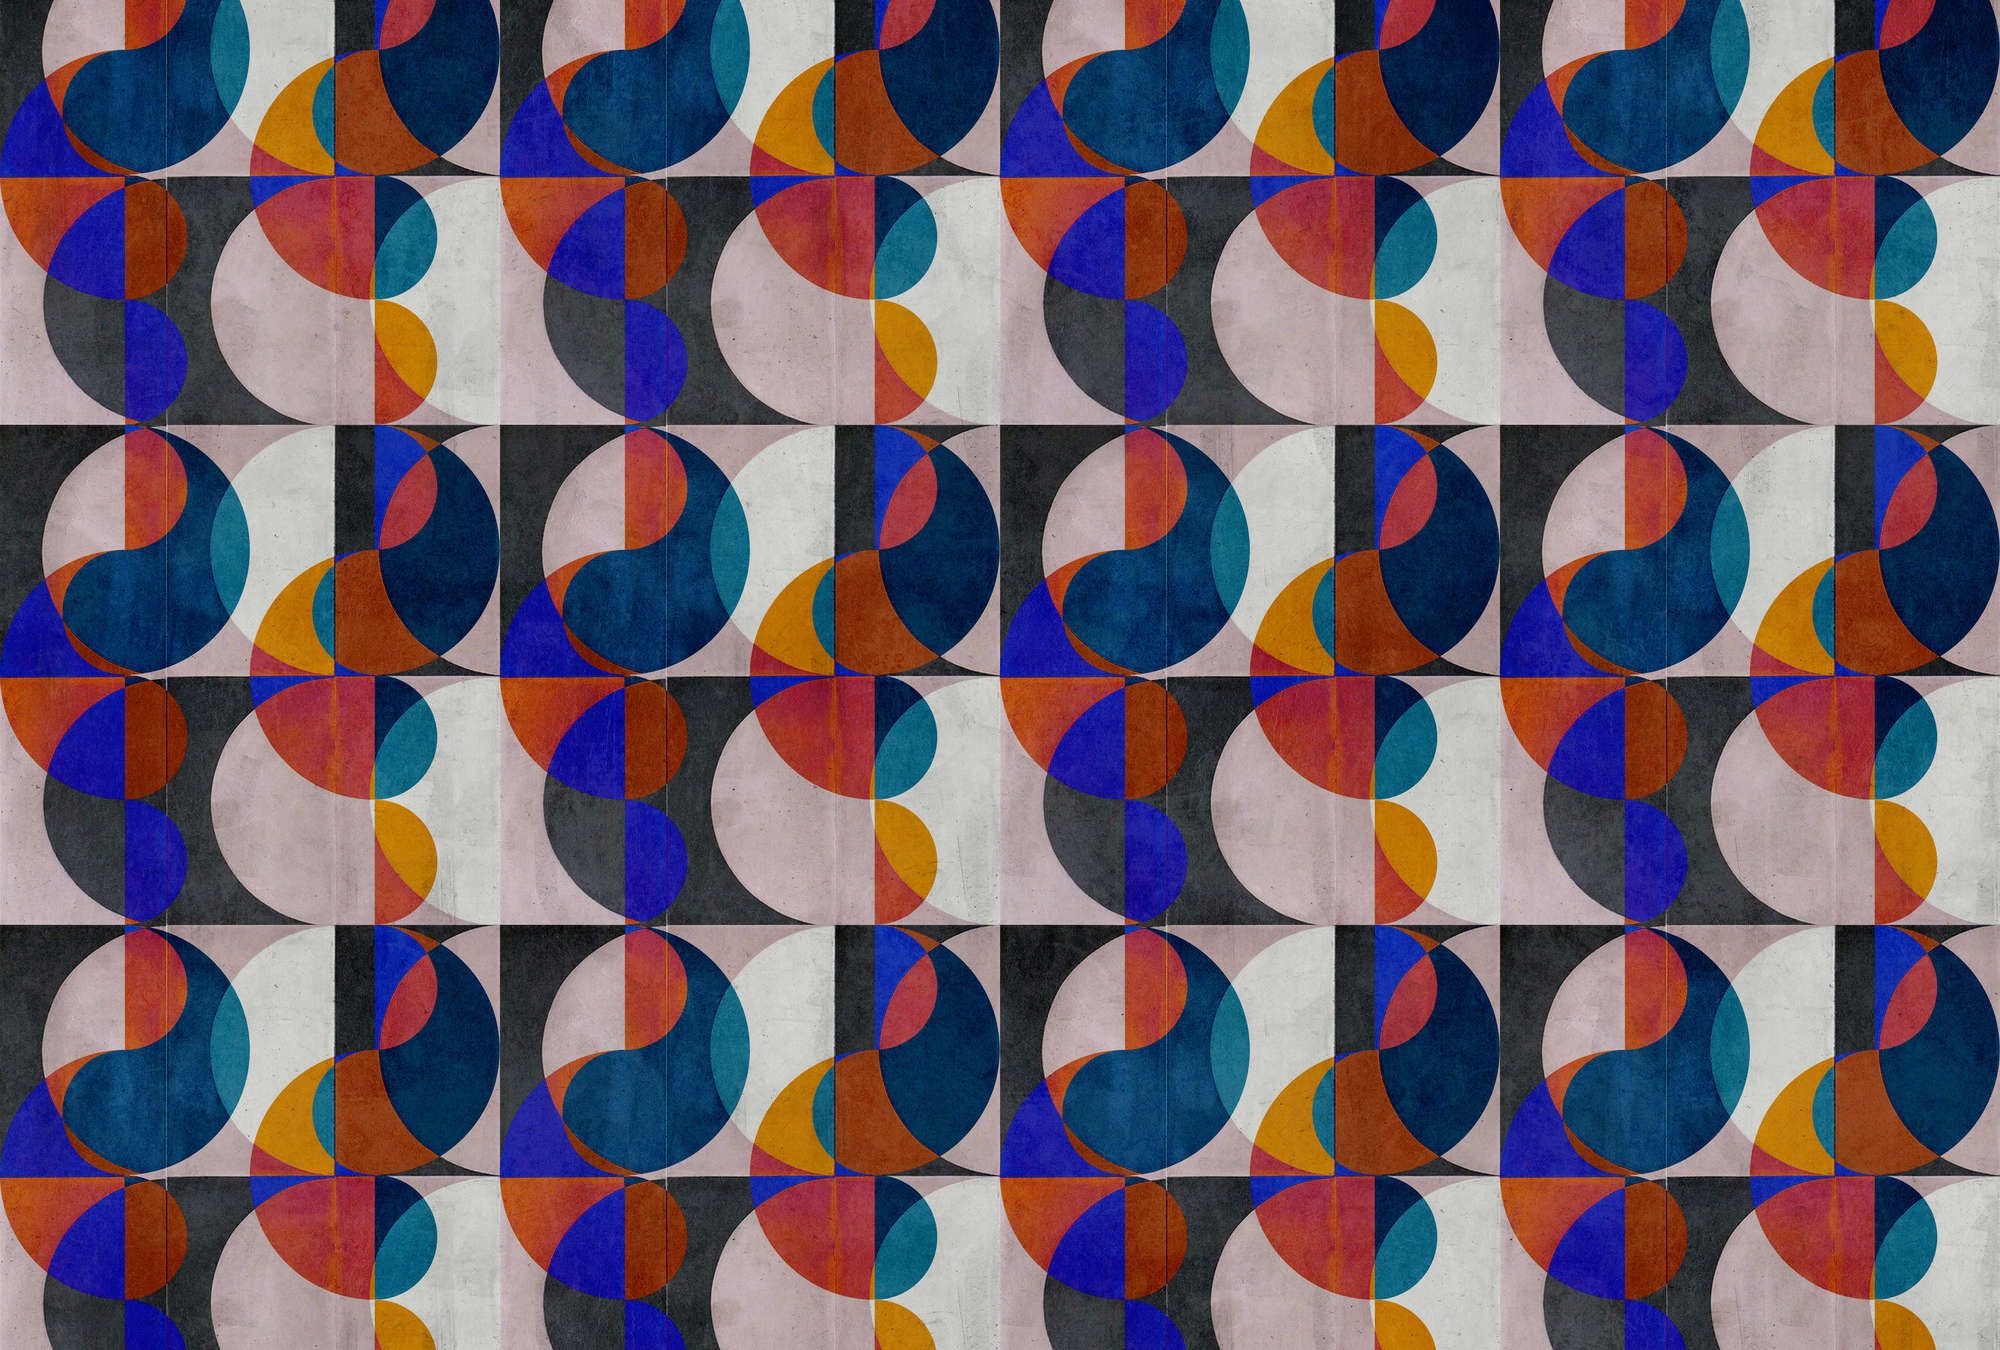             papier peint en papier panoramique »mia« - motif abstrait rétro sur structure d'enduit béton - multicolore | Intissé lisse, légèrement nacré
        